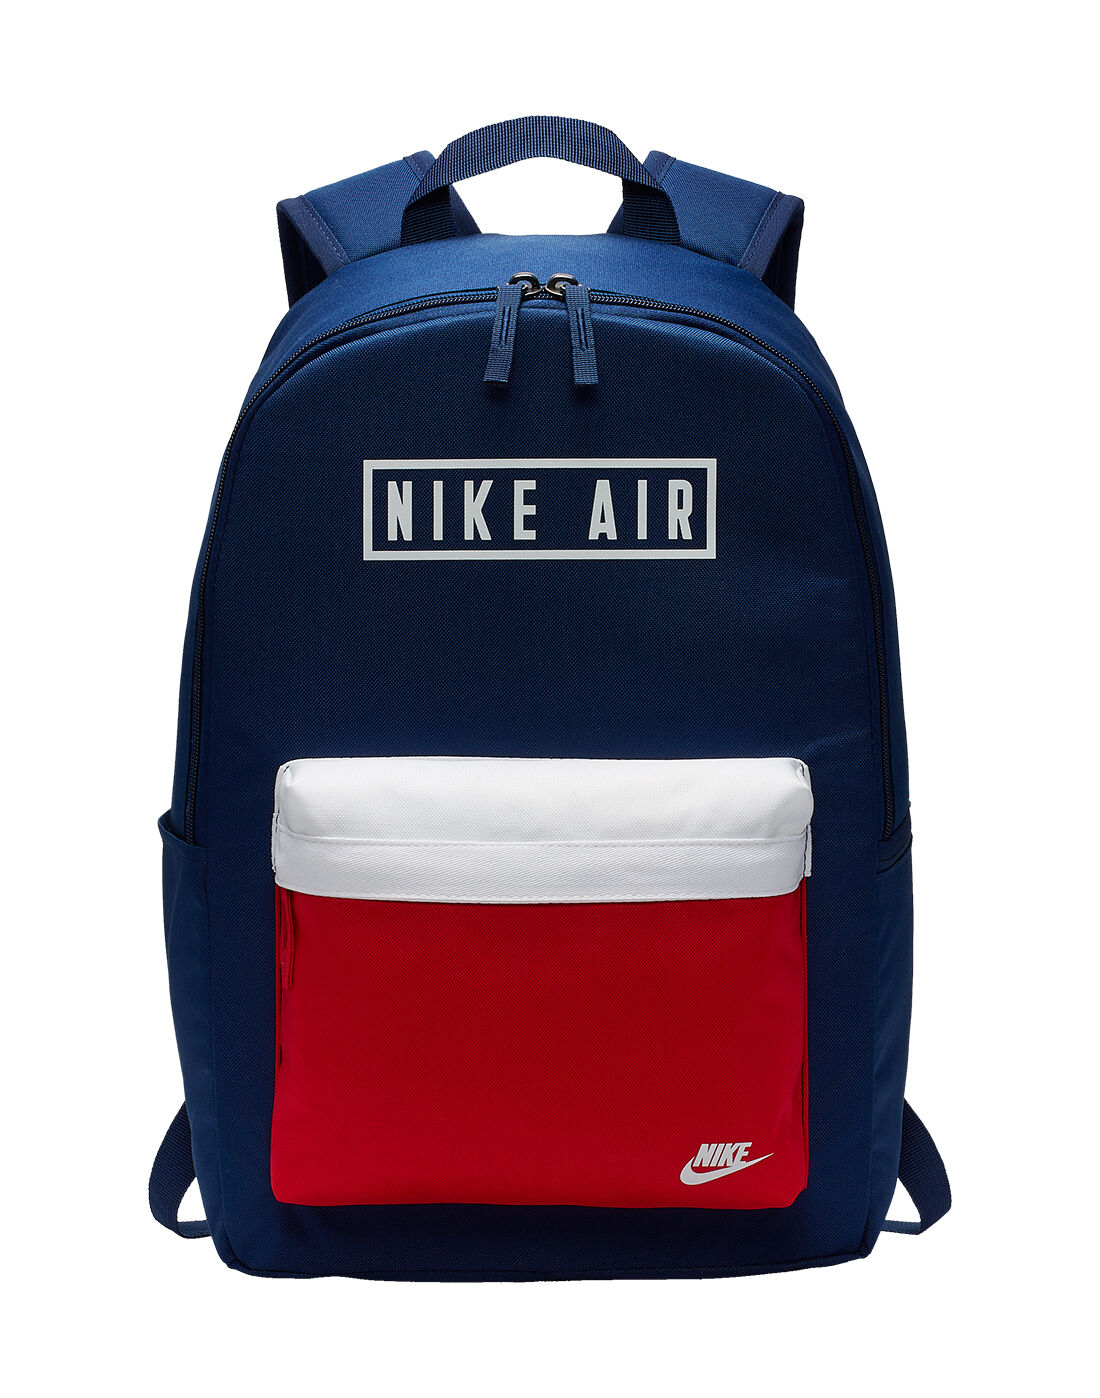 nike air blue backpack